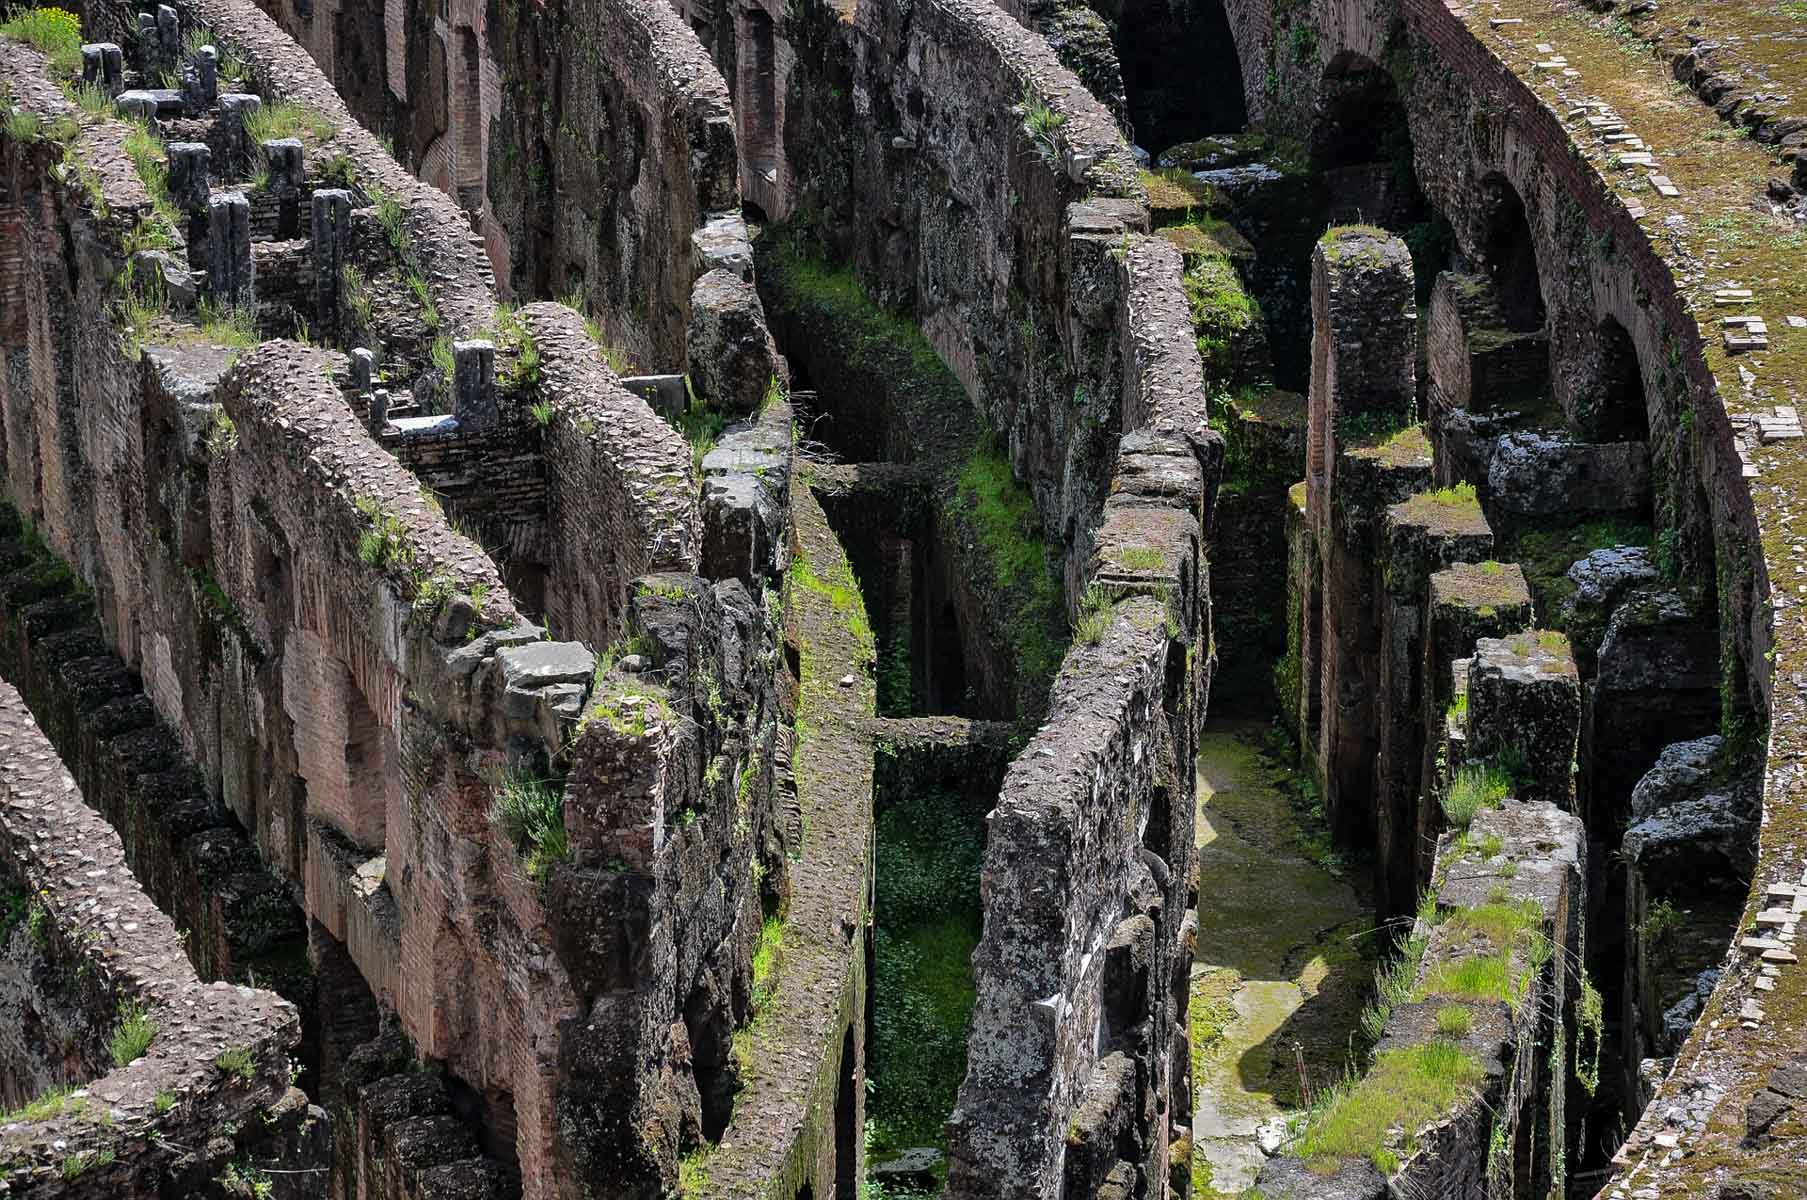 Colosseum, Foto: pixabay